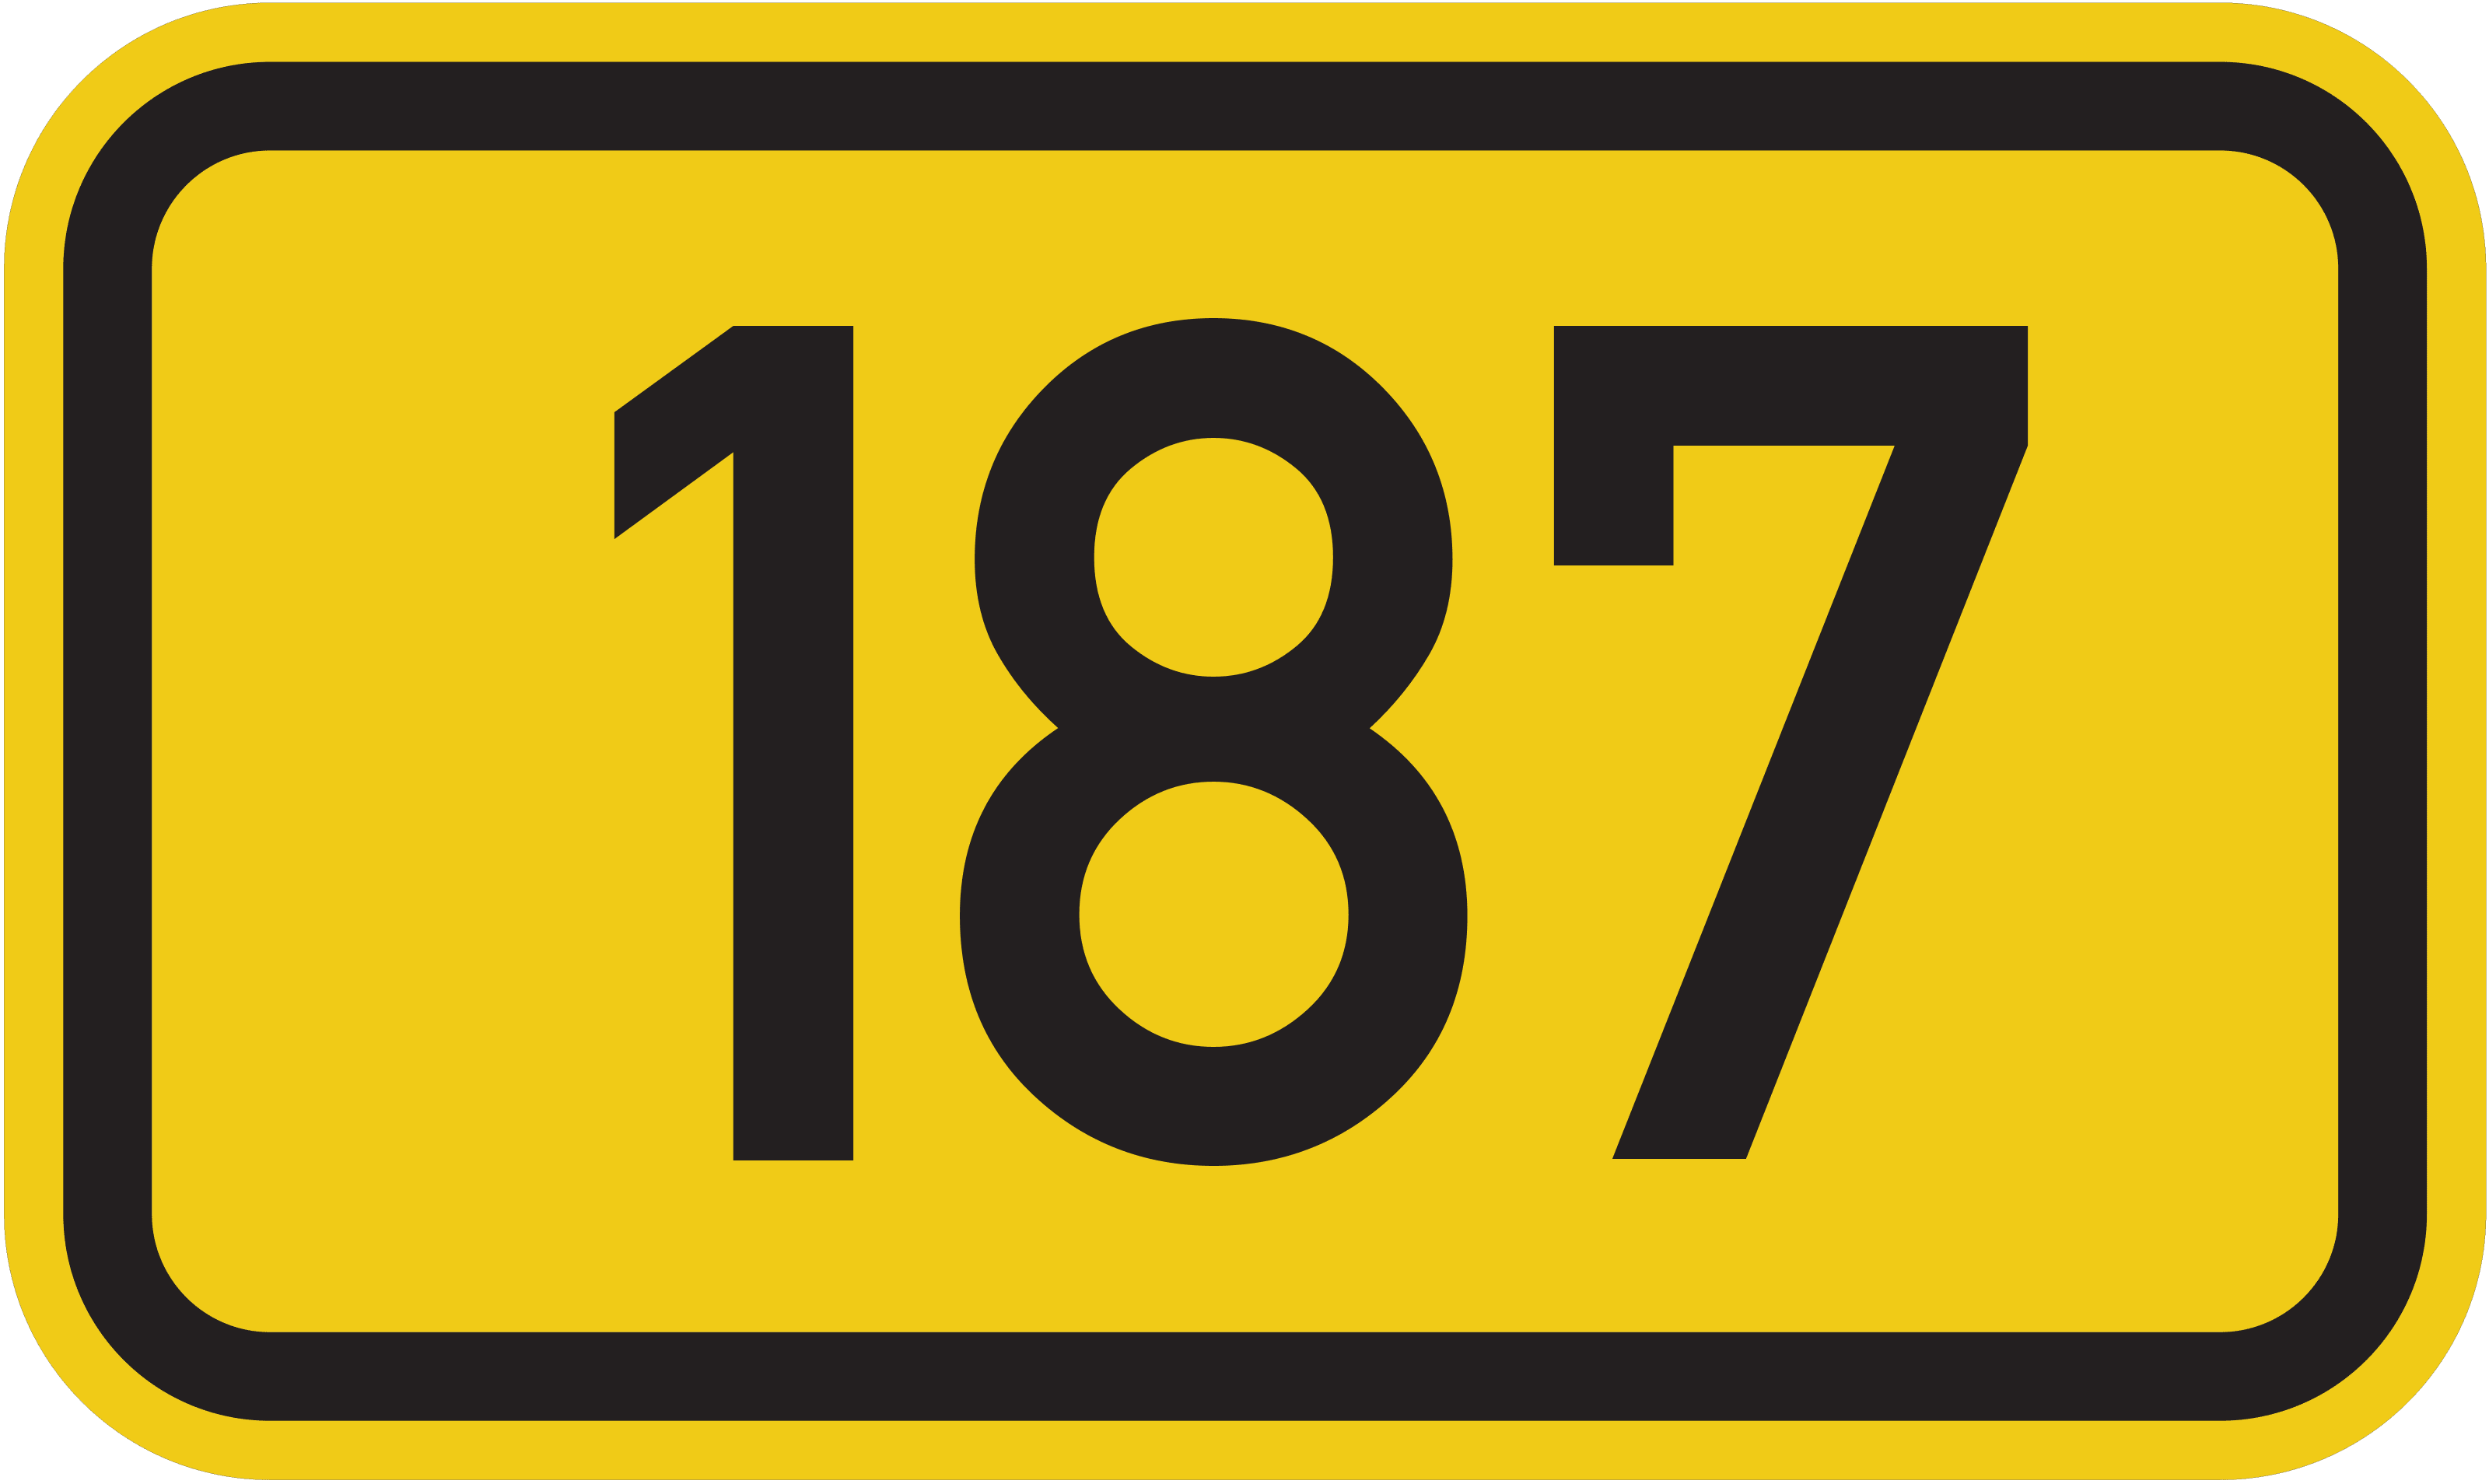 Bundesstraße B 187